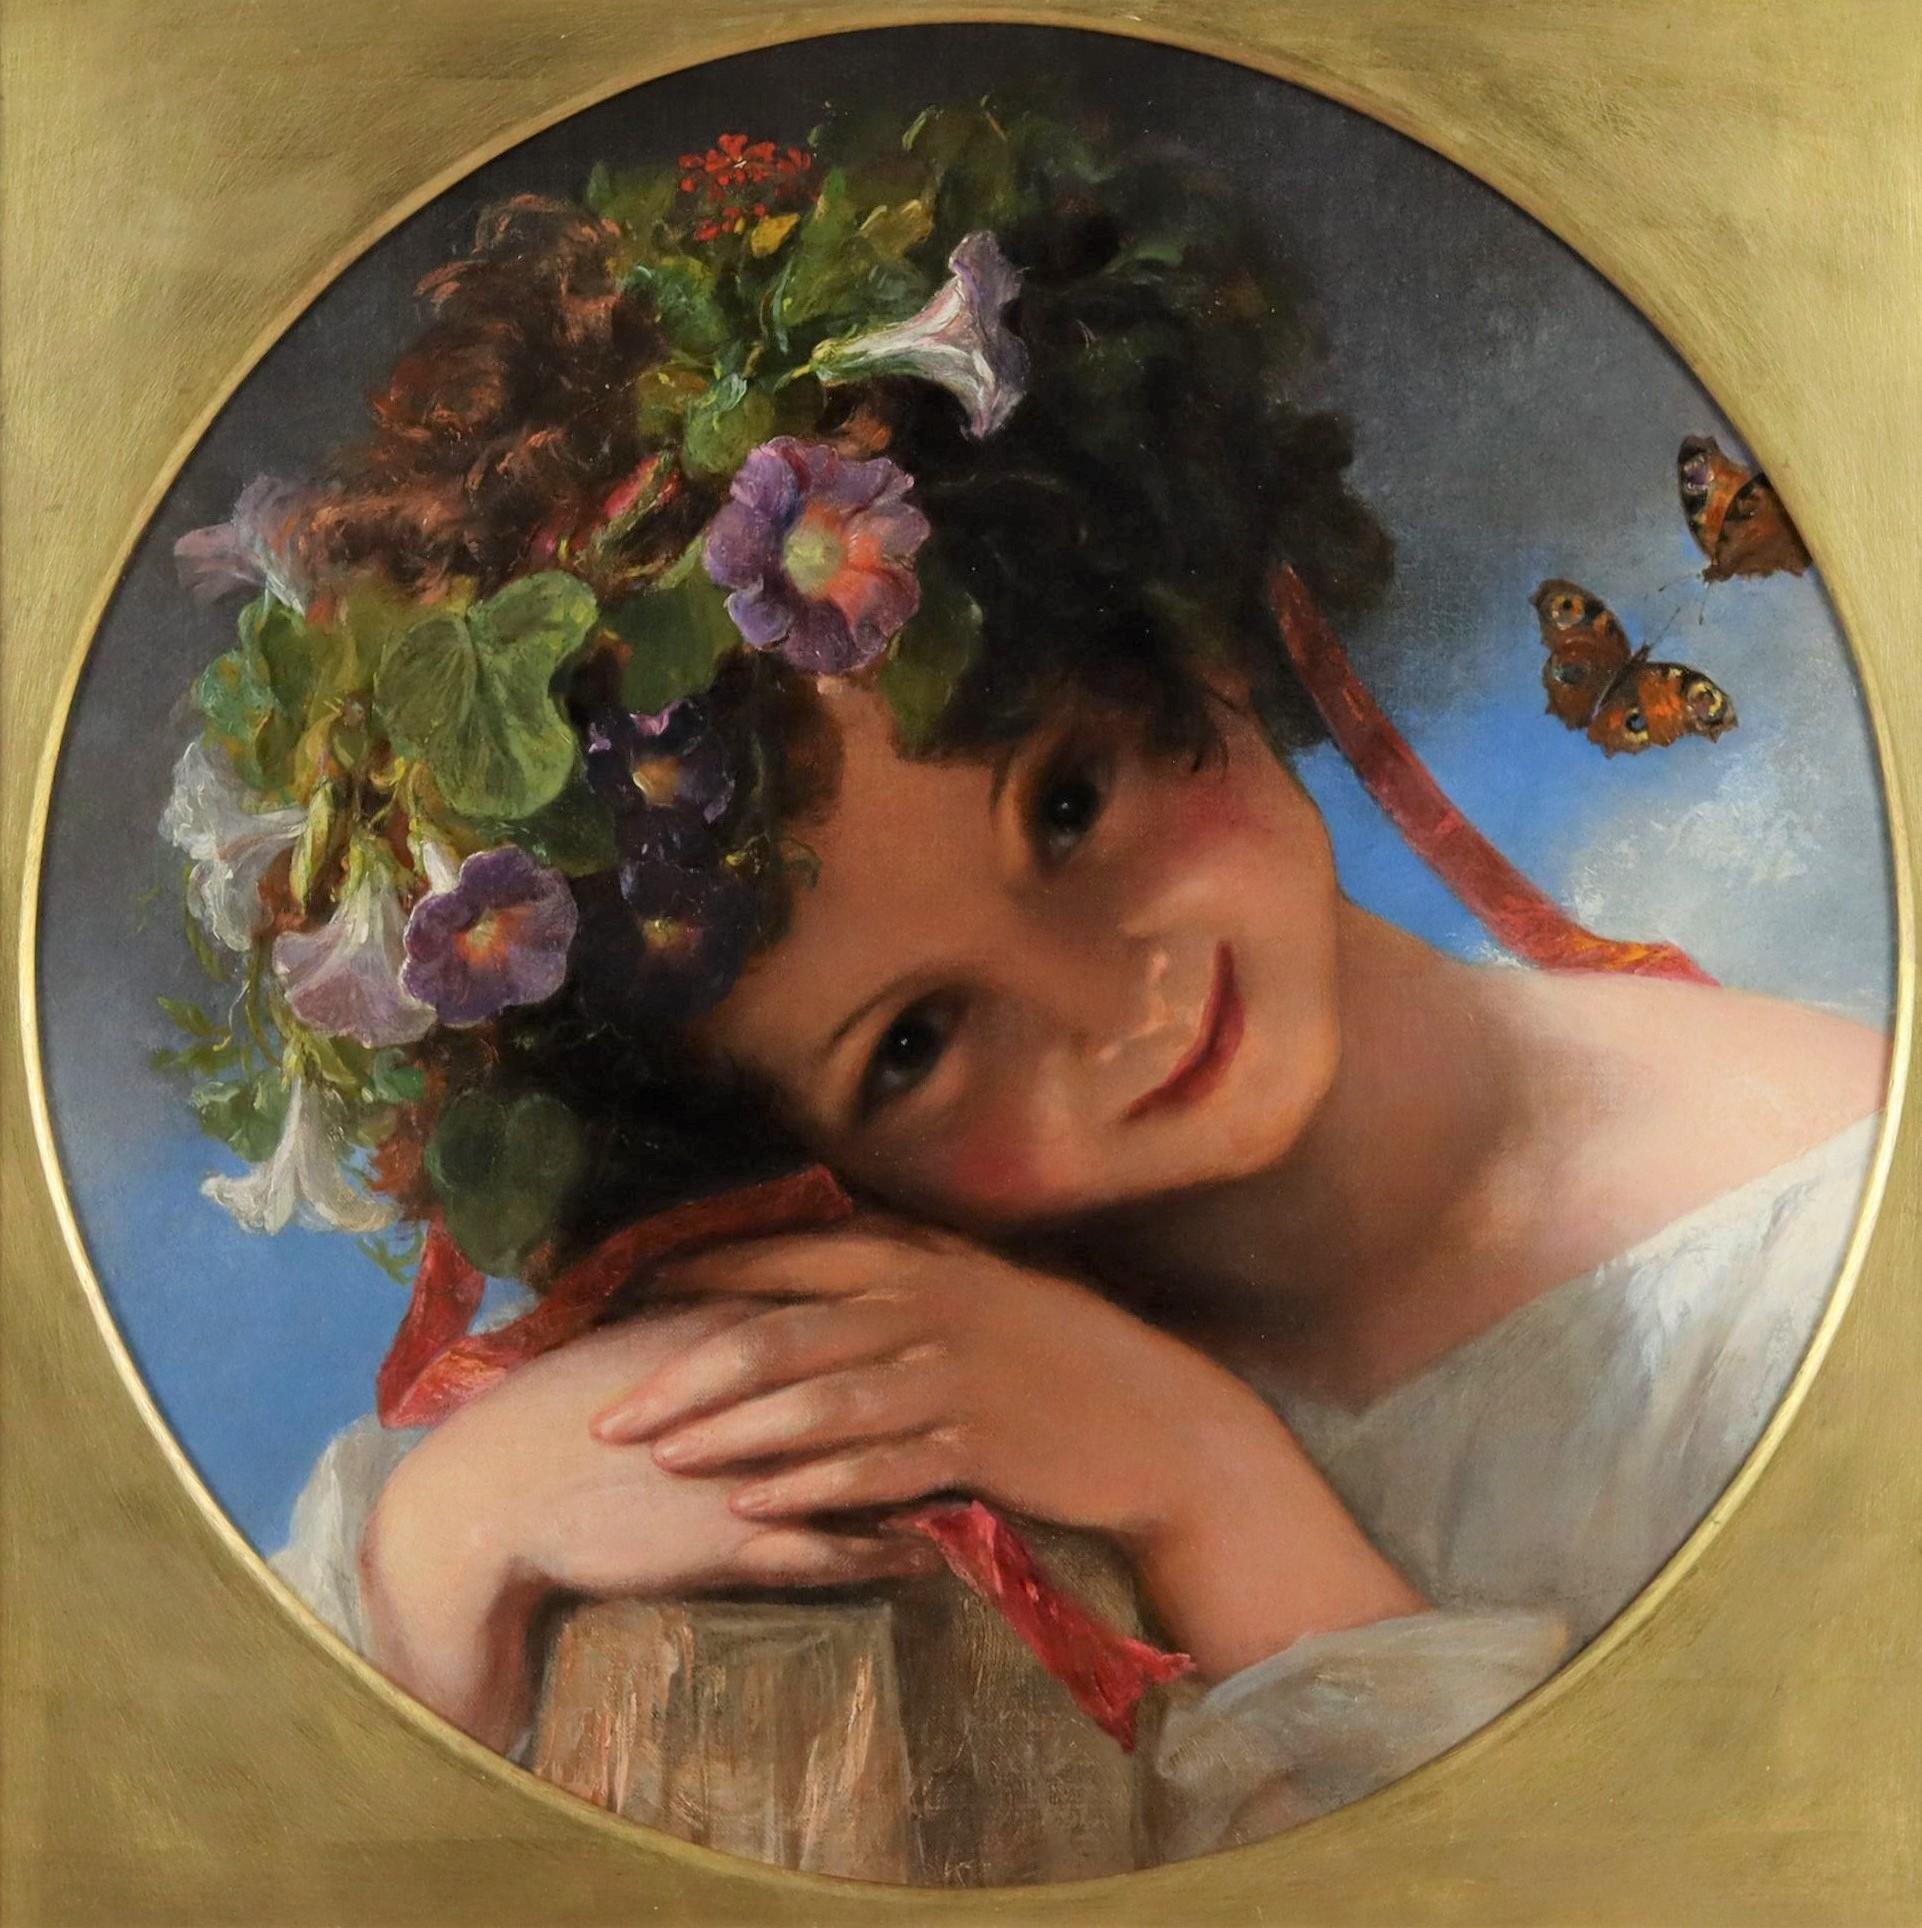 James Holland Portrait Painting – Porträt eines bezaubernden jungen Mädchens, das eine Girlande aus Morgenblumen trägt